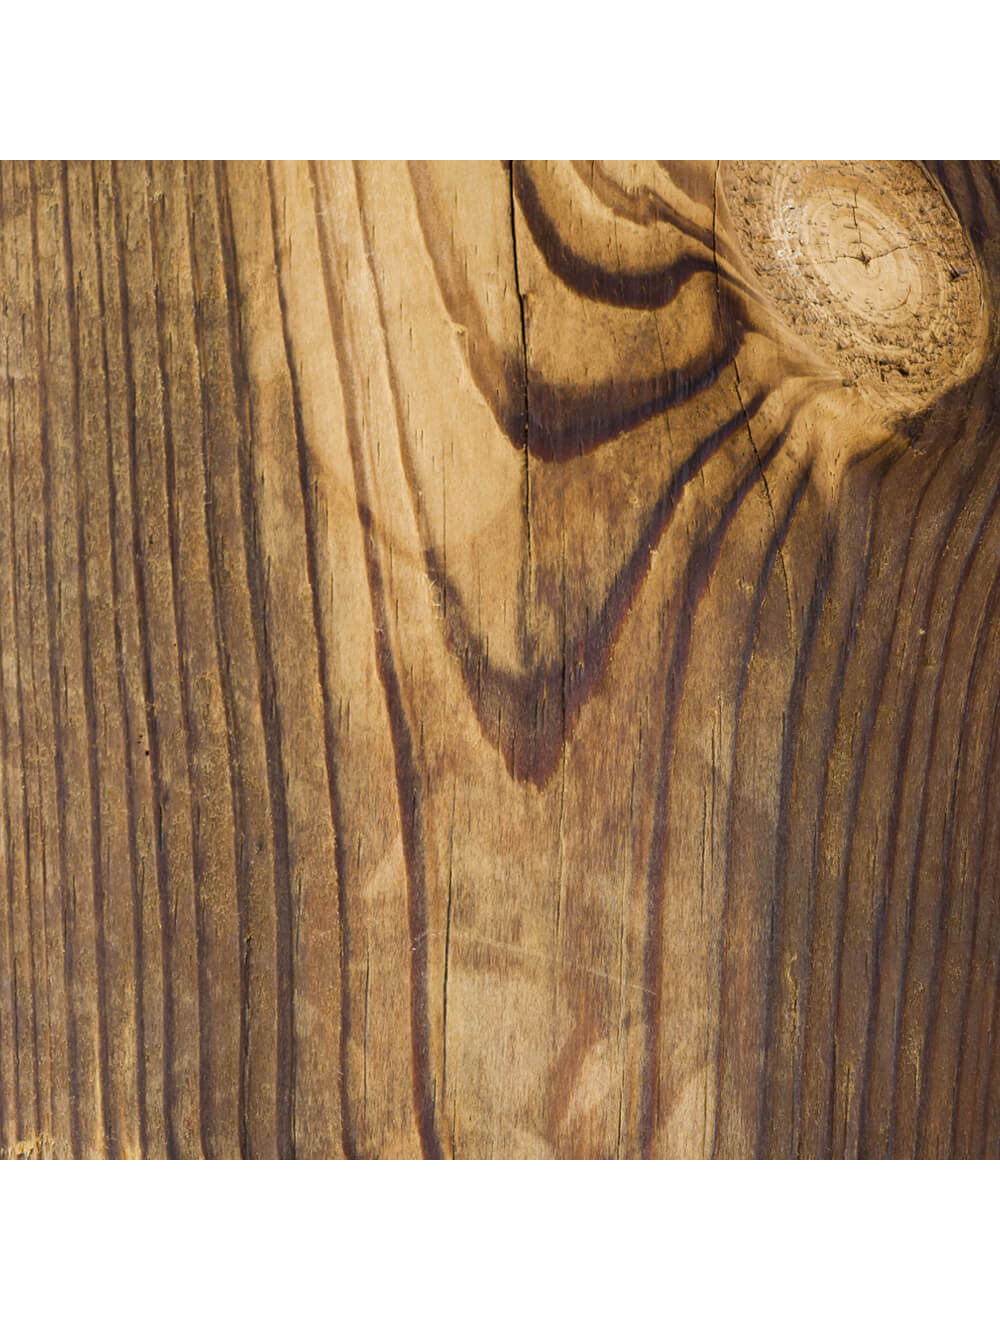 Образец материала для деревянного дубового пола